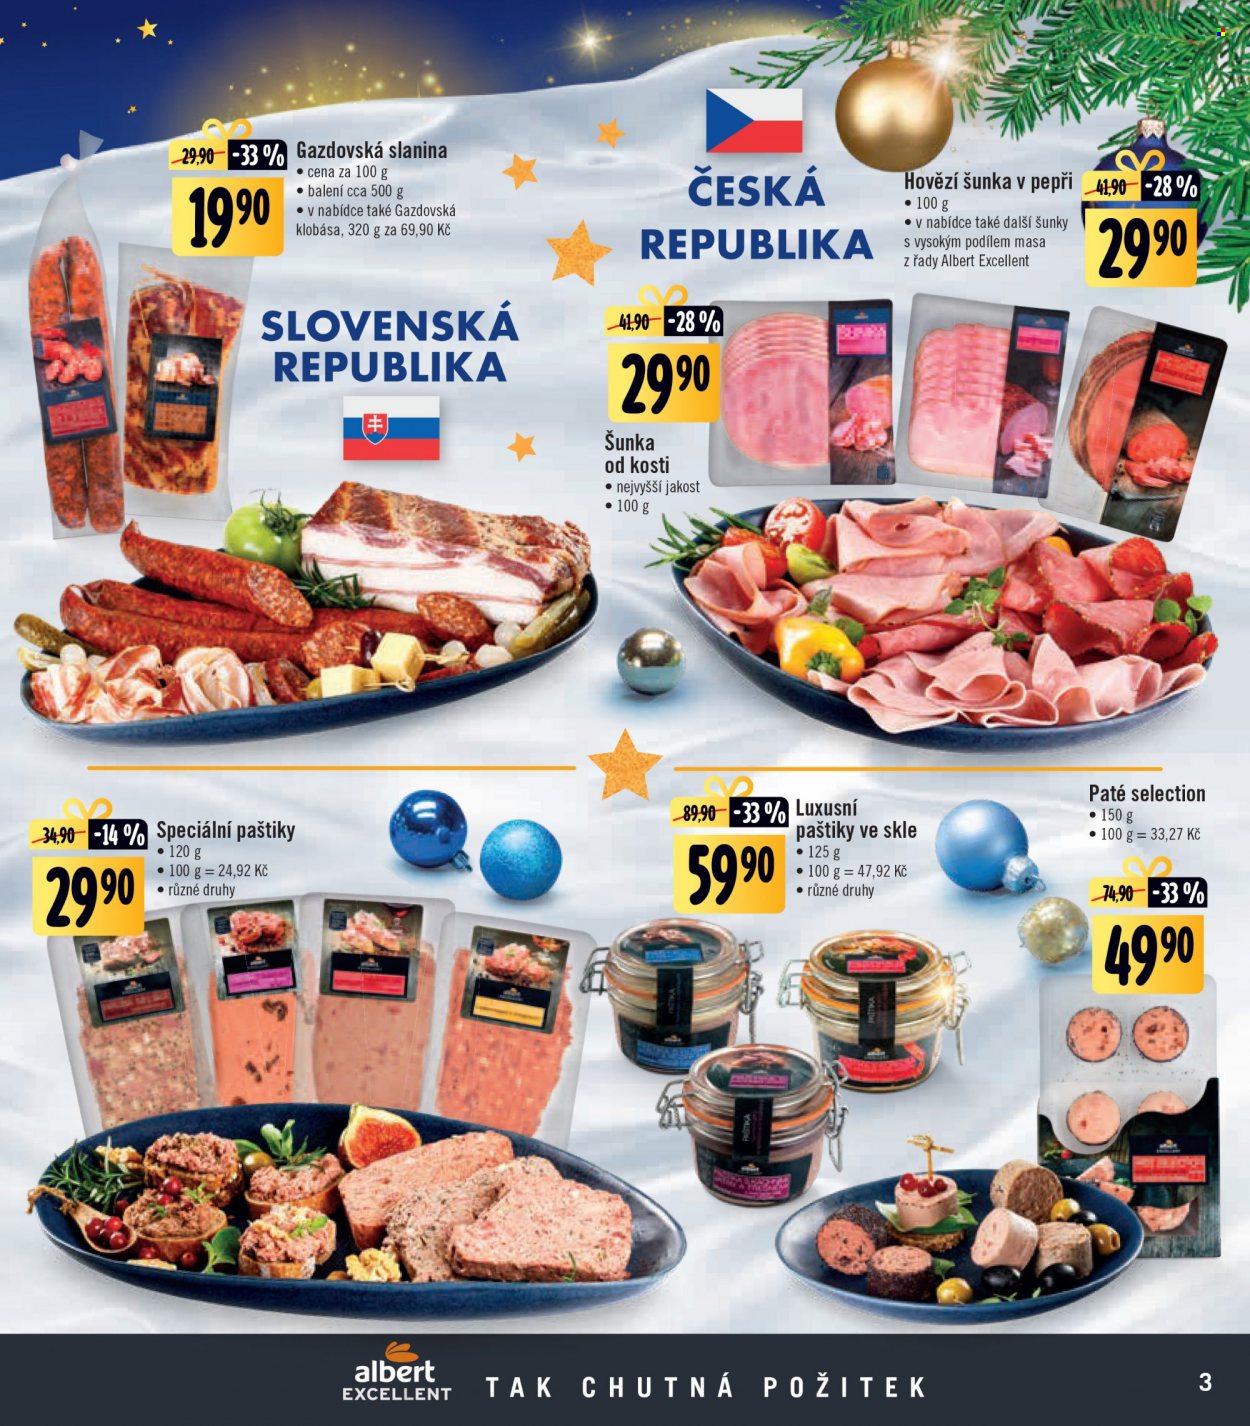 Leták Albert Supermarket - 17. 11. 2021 - 2. 1. 2022. 